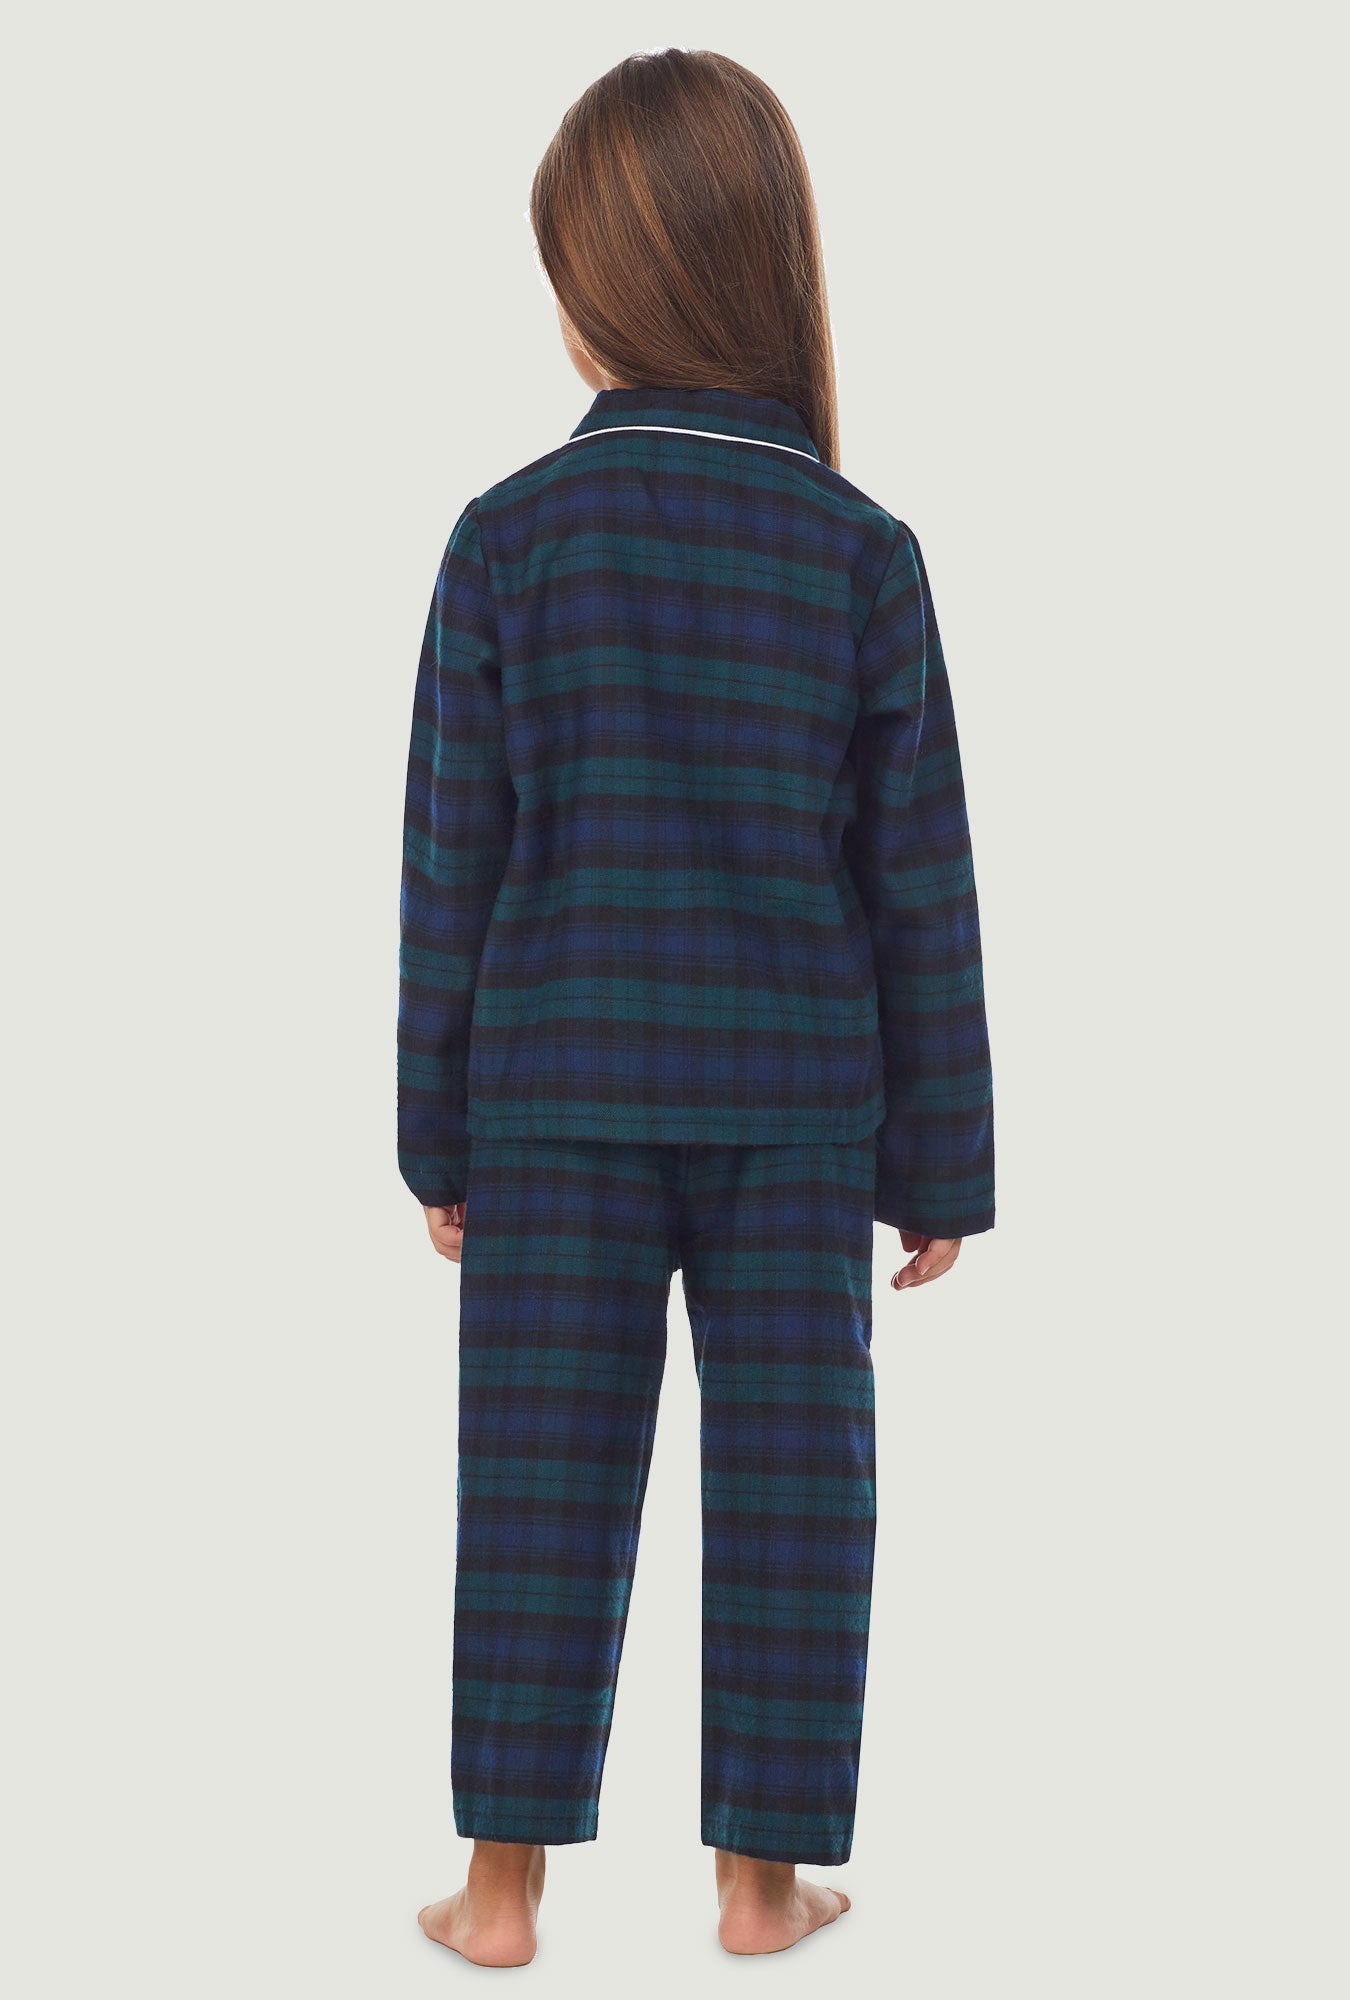 115/ Easy Fit 2 Pc. Flannel Pyjamas / Black Watch Tartan – Rocky